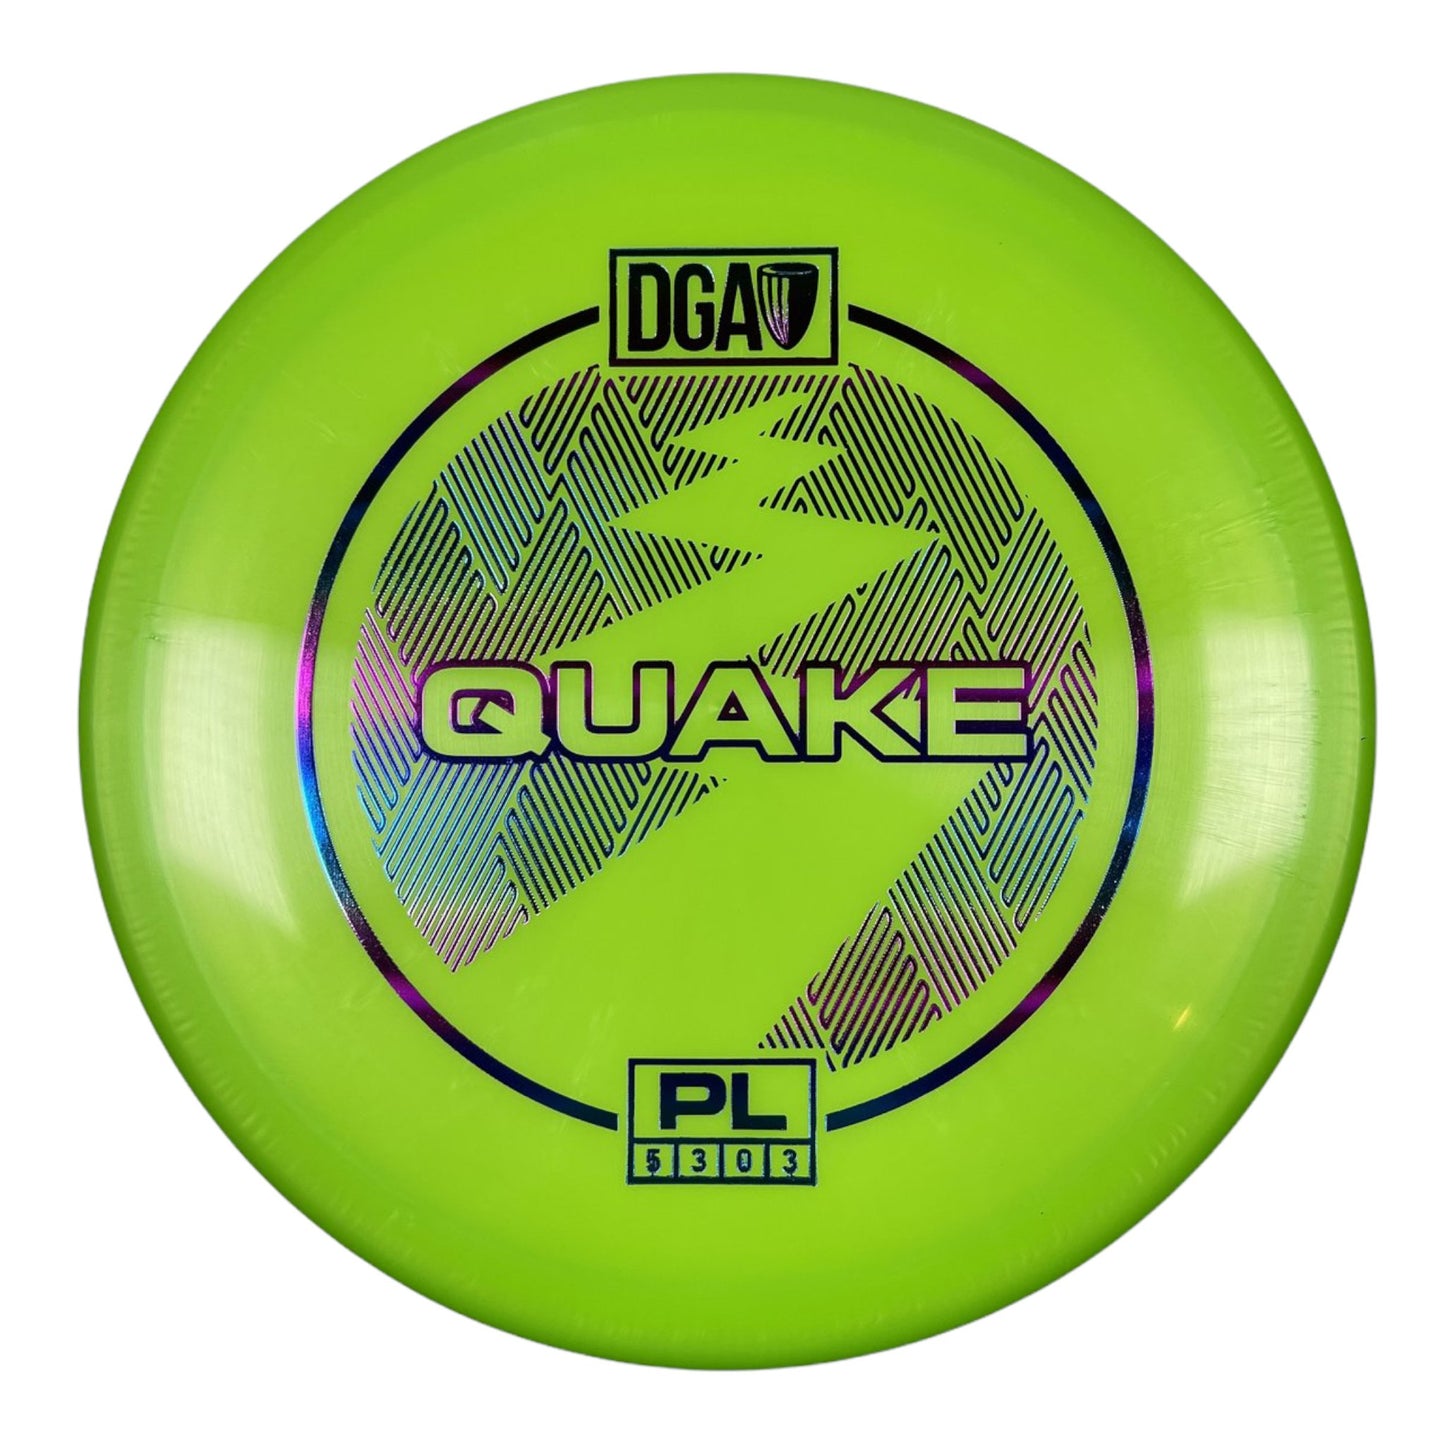 DGA Quake | PL | Green/Rainbow 173g Disc Golf